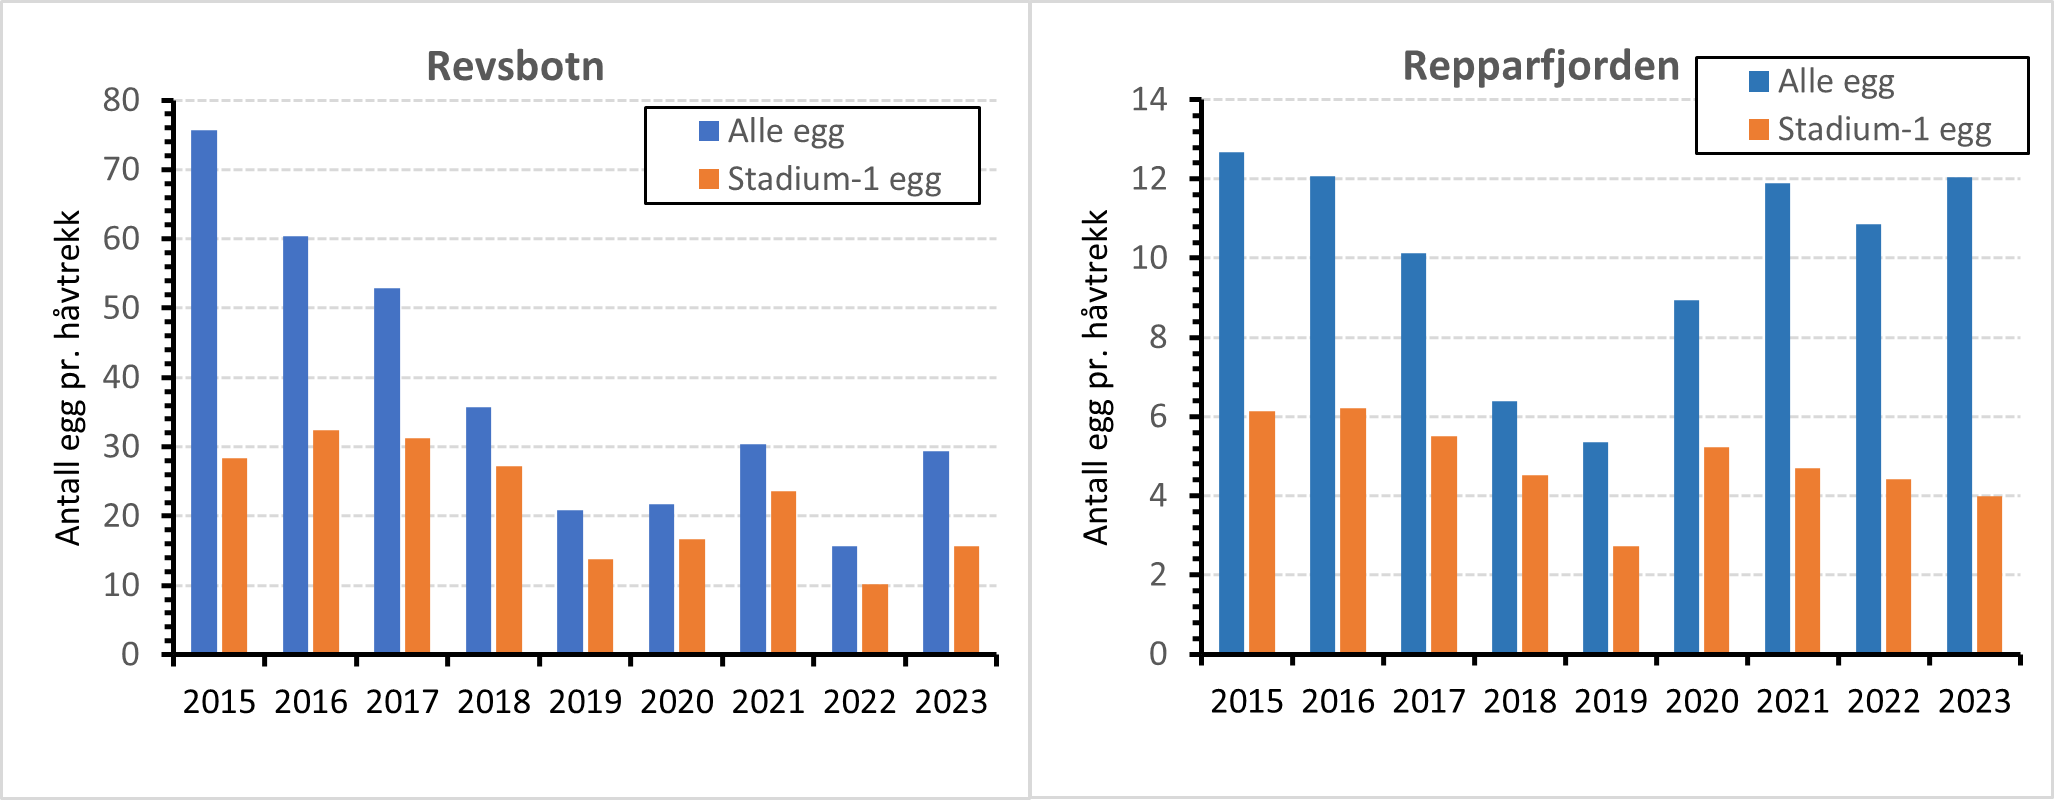 Figur 19 : Resultat av eggundersøkelser i a) Revsbotn og b) Repparforden 2015-2023. Stablene viser gjennomsnittlig antall egg pr. håvtrekk for de tre toktene som ble gjennomført i gytesesongen.